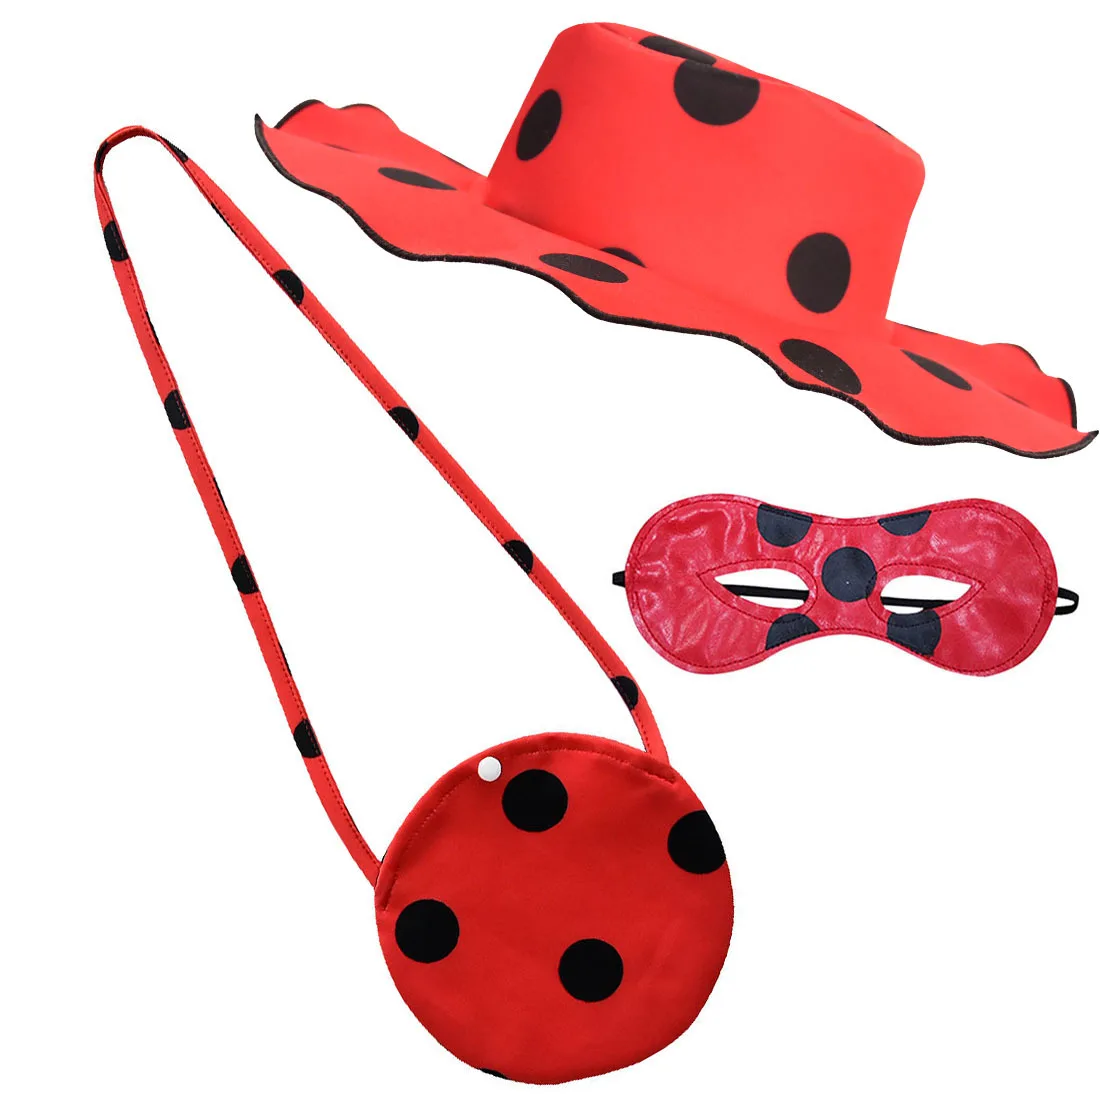 НОВЫЕ комплекты для косплея Леди Жук маски в красный горошек сумка перчатки шапки 4 шт. Сумочка для девочек маскарадный костюм ребенок божья коровка мультфильм подарки действие игрушка